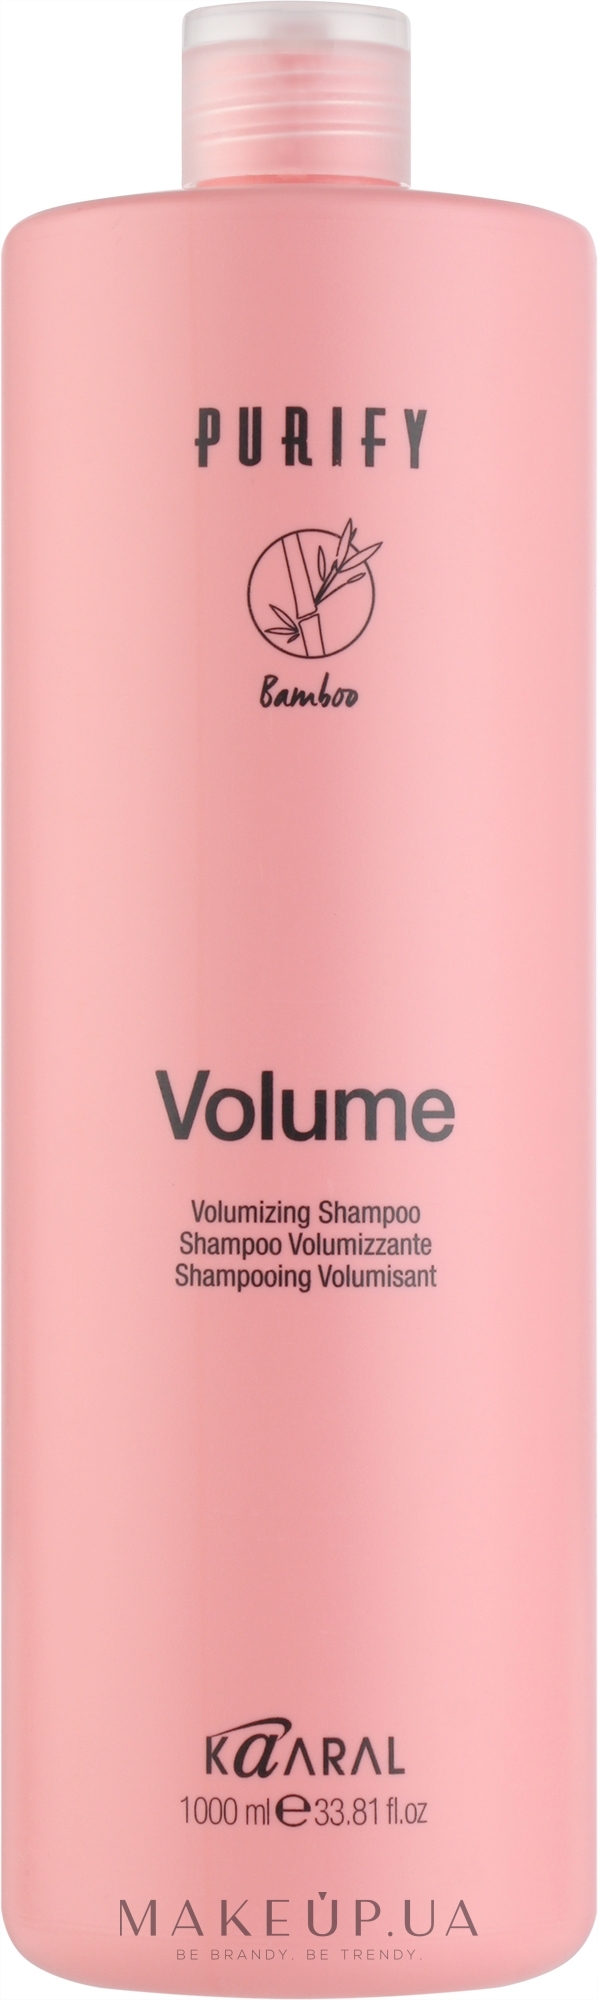 Шампунь для тонких волос с экстрактом бамбука - Kaaral Purify Volume Shampoo — фото 1000ml